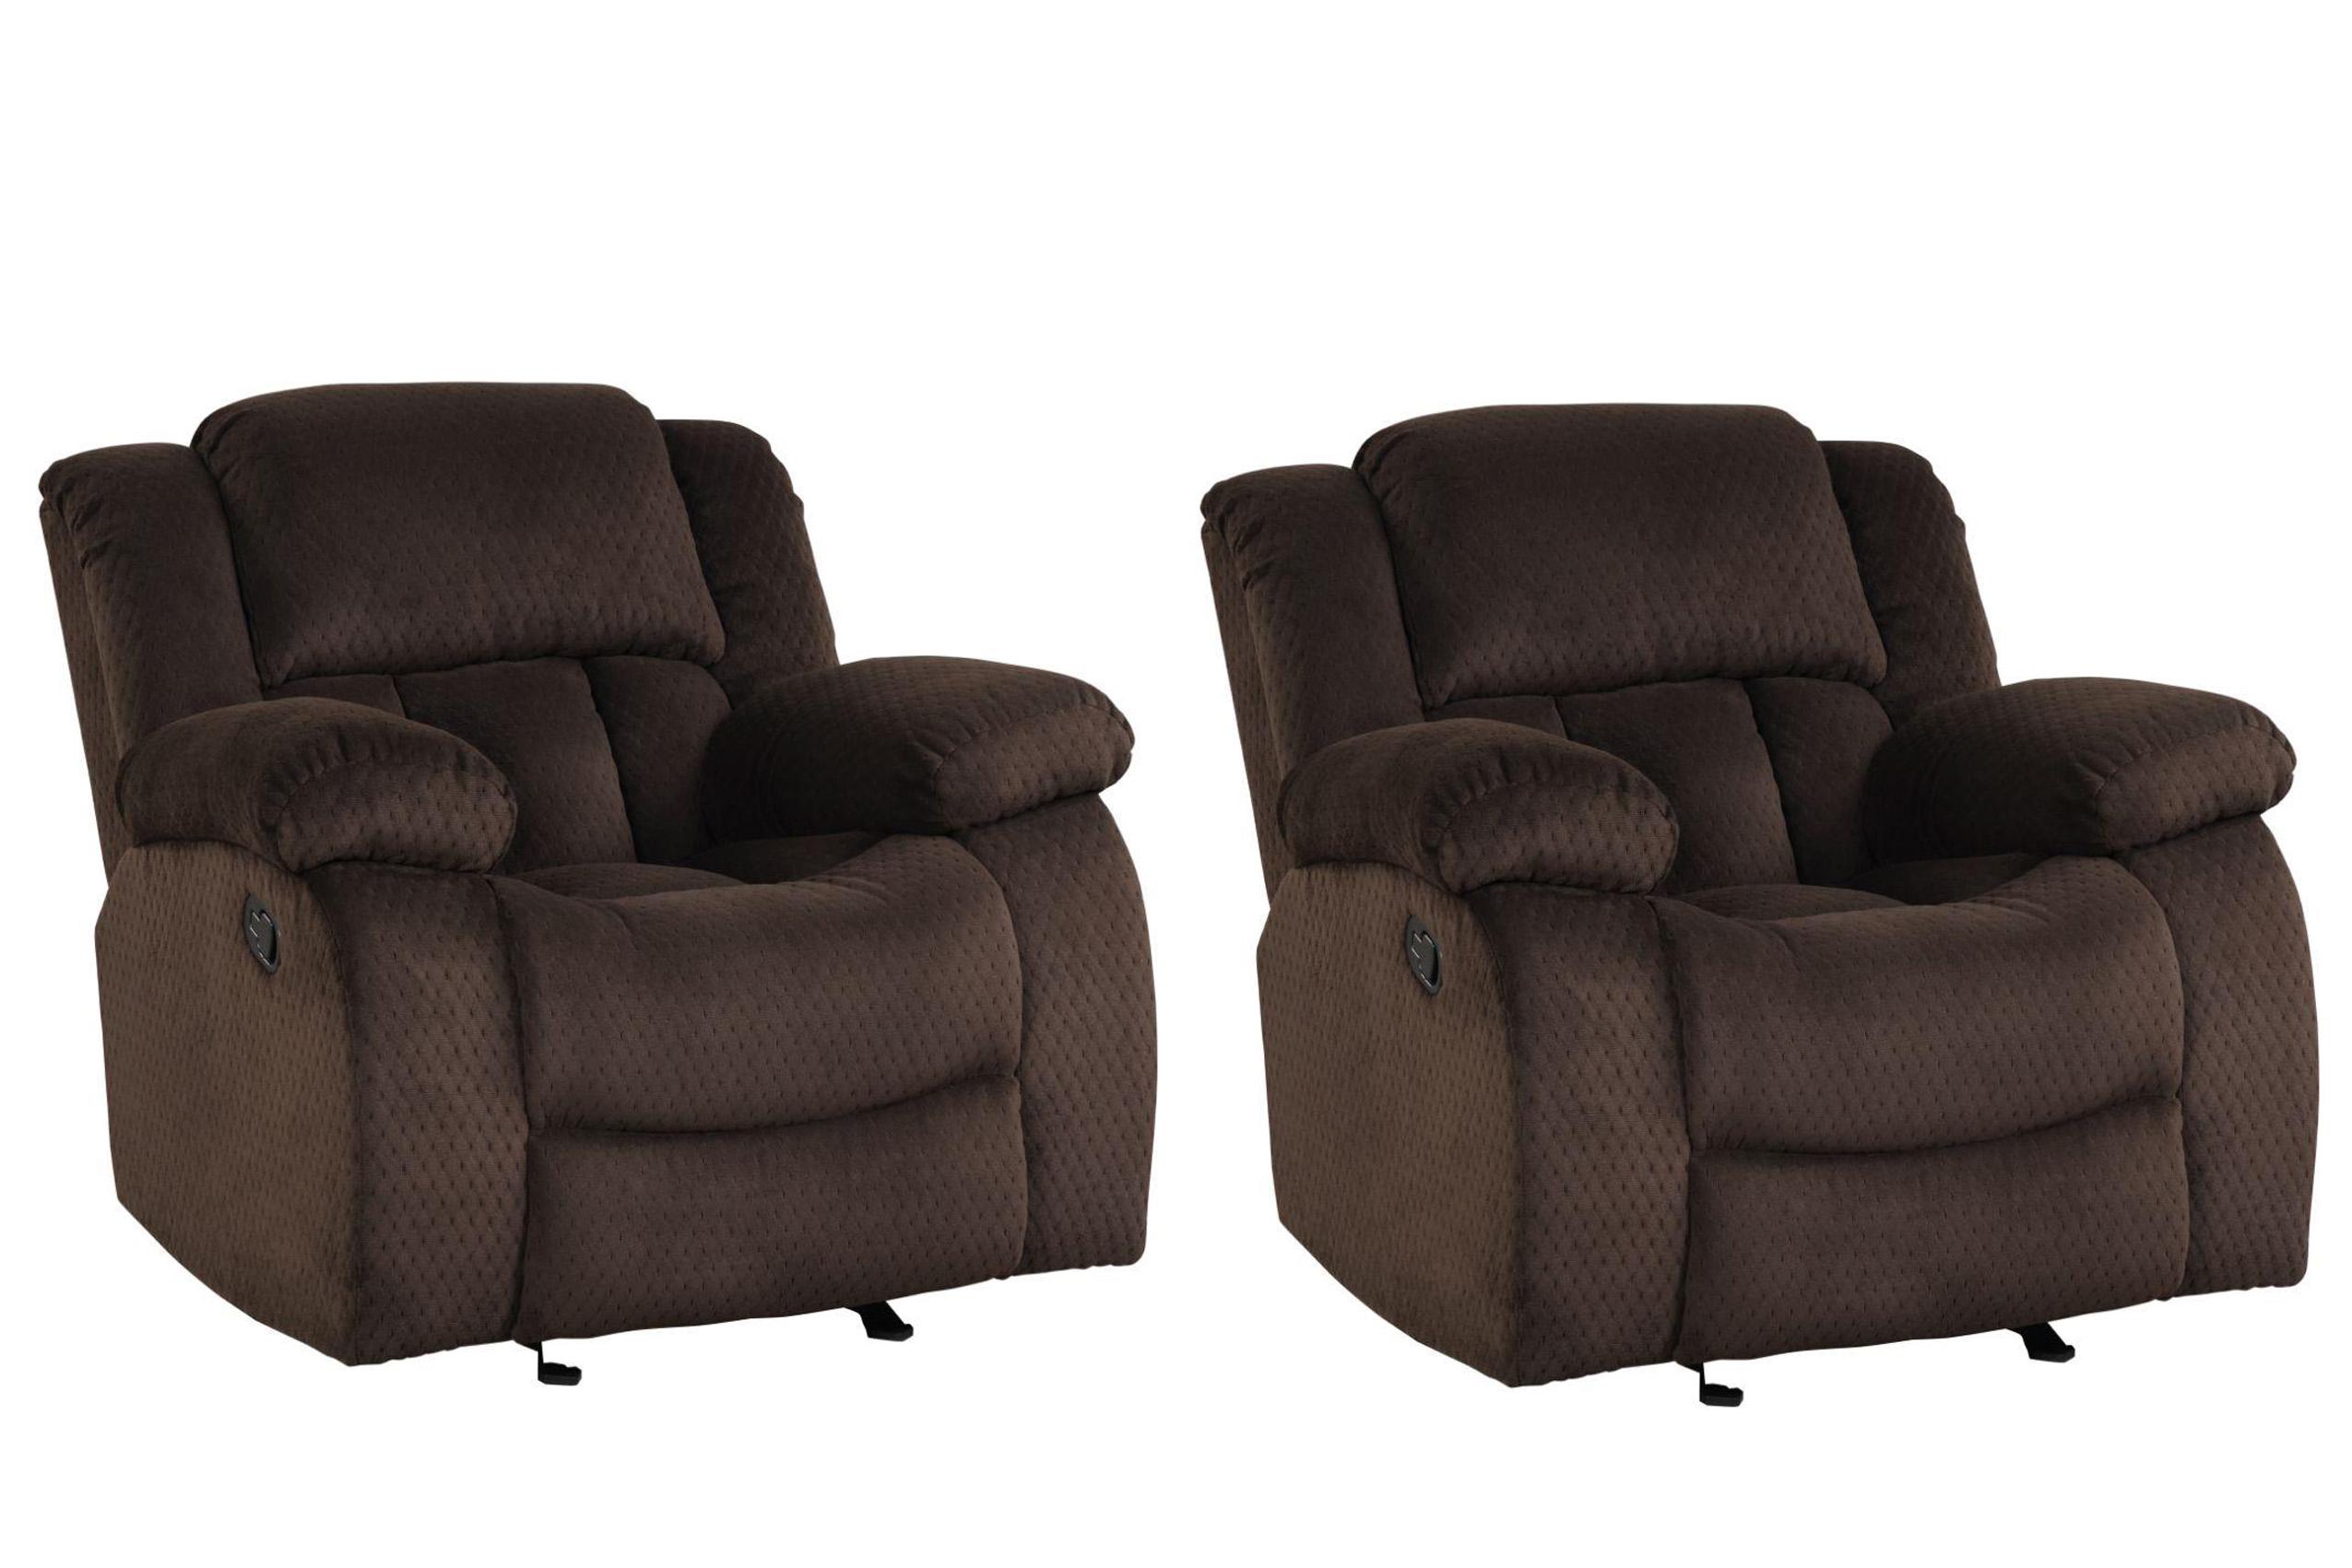 Galaxy Home Furniture ARMADA Brown Recliner Chair Set